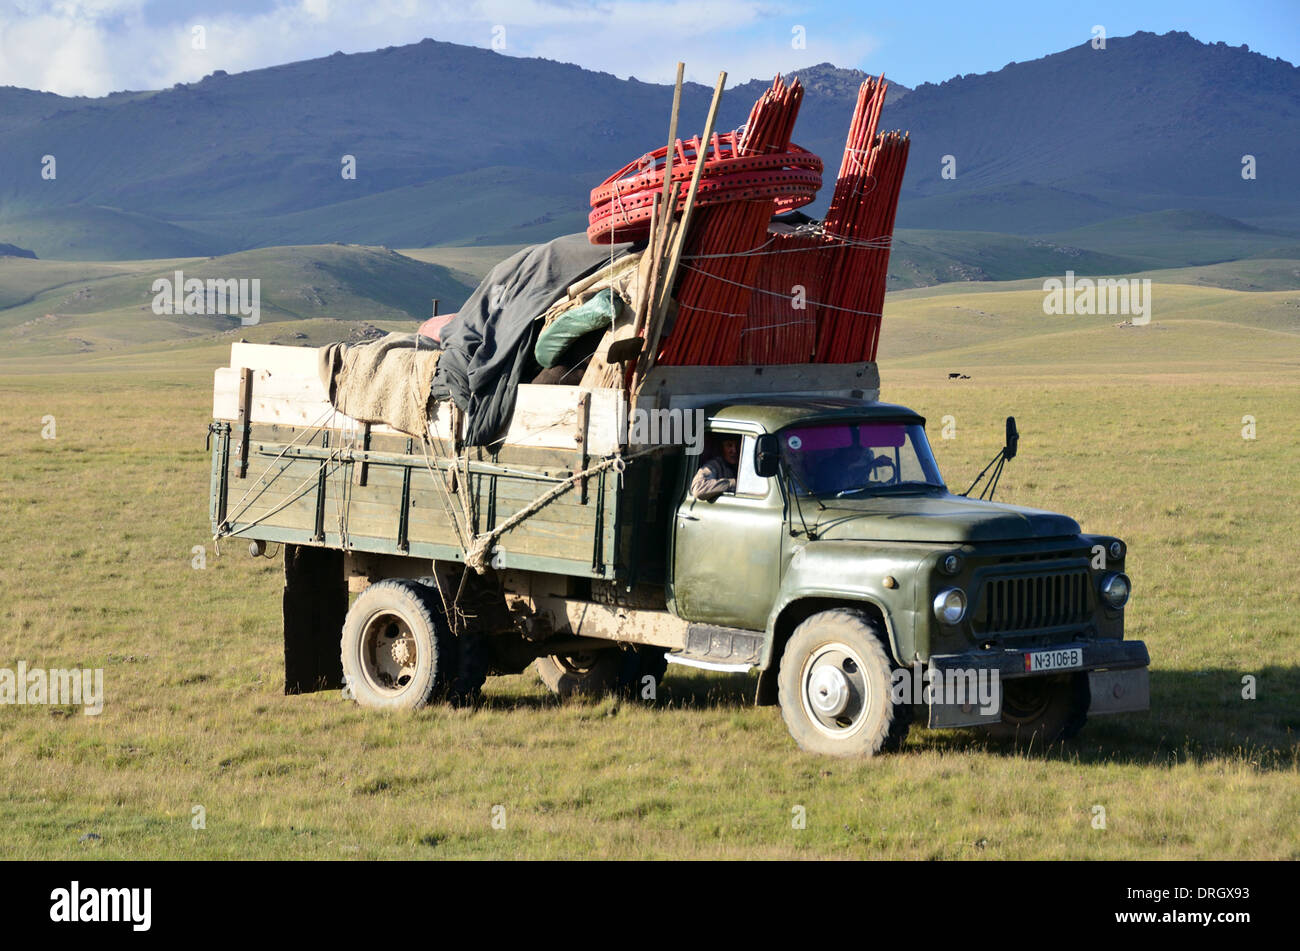 Transport des yourtes kirghizes près du lac Song-Kol en Europe centrale Kirghizistan Banque D'Images